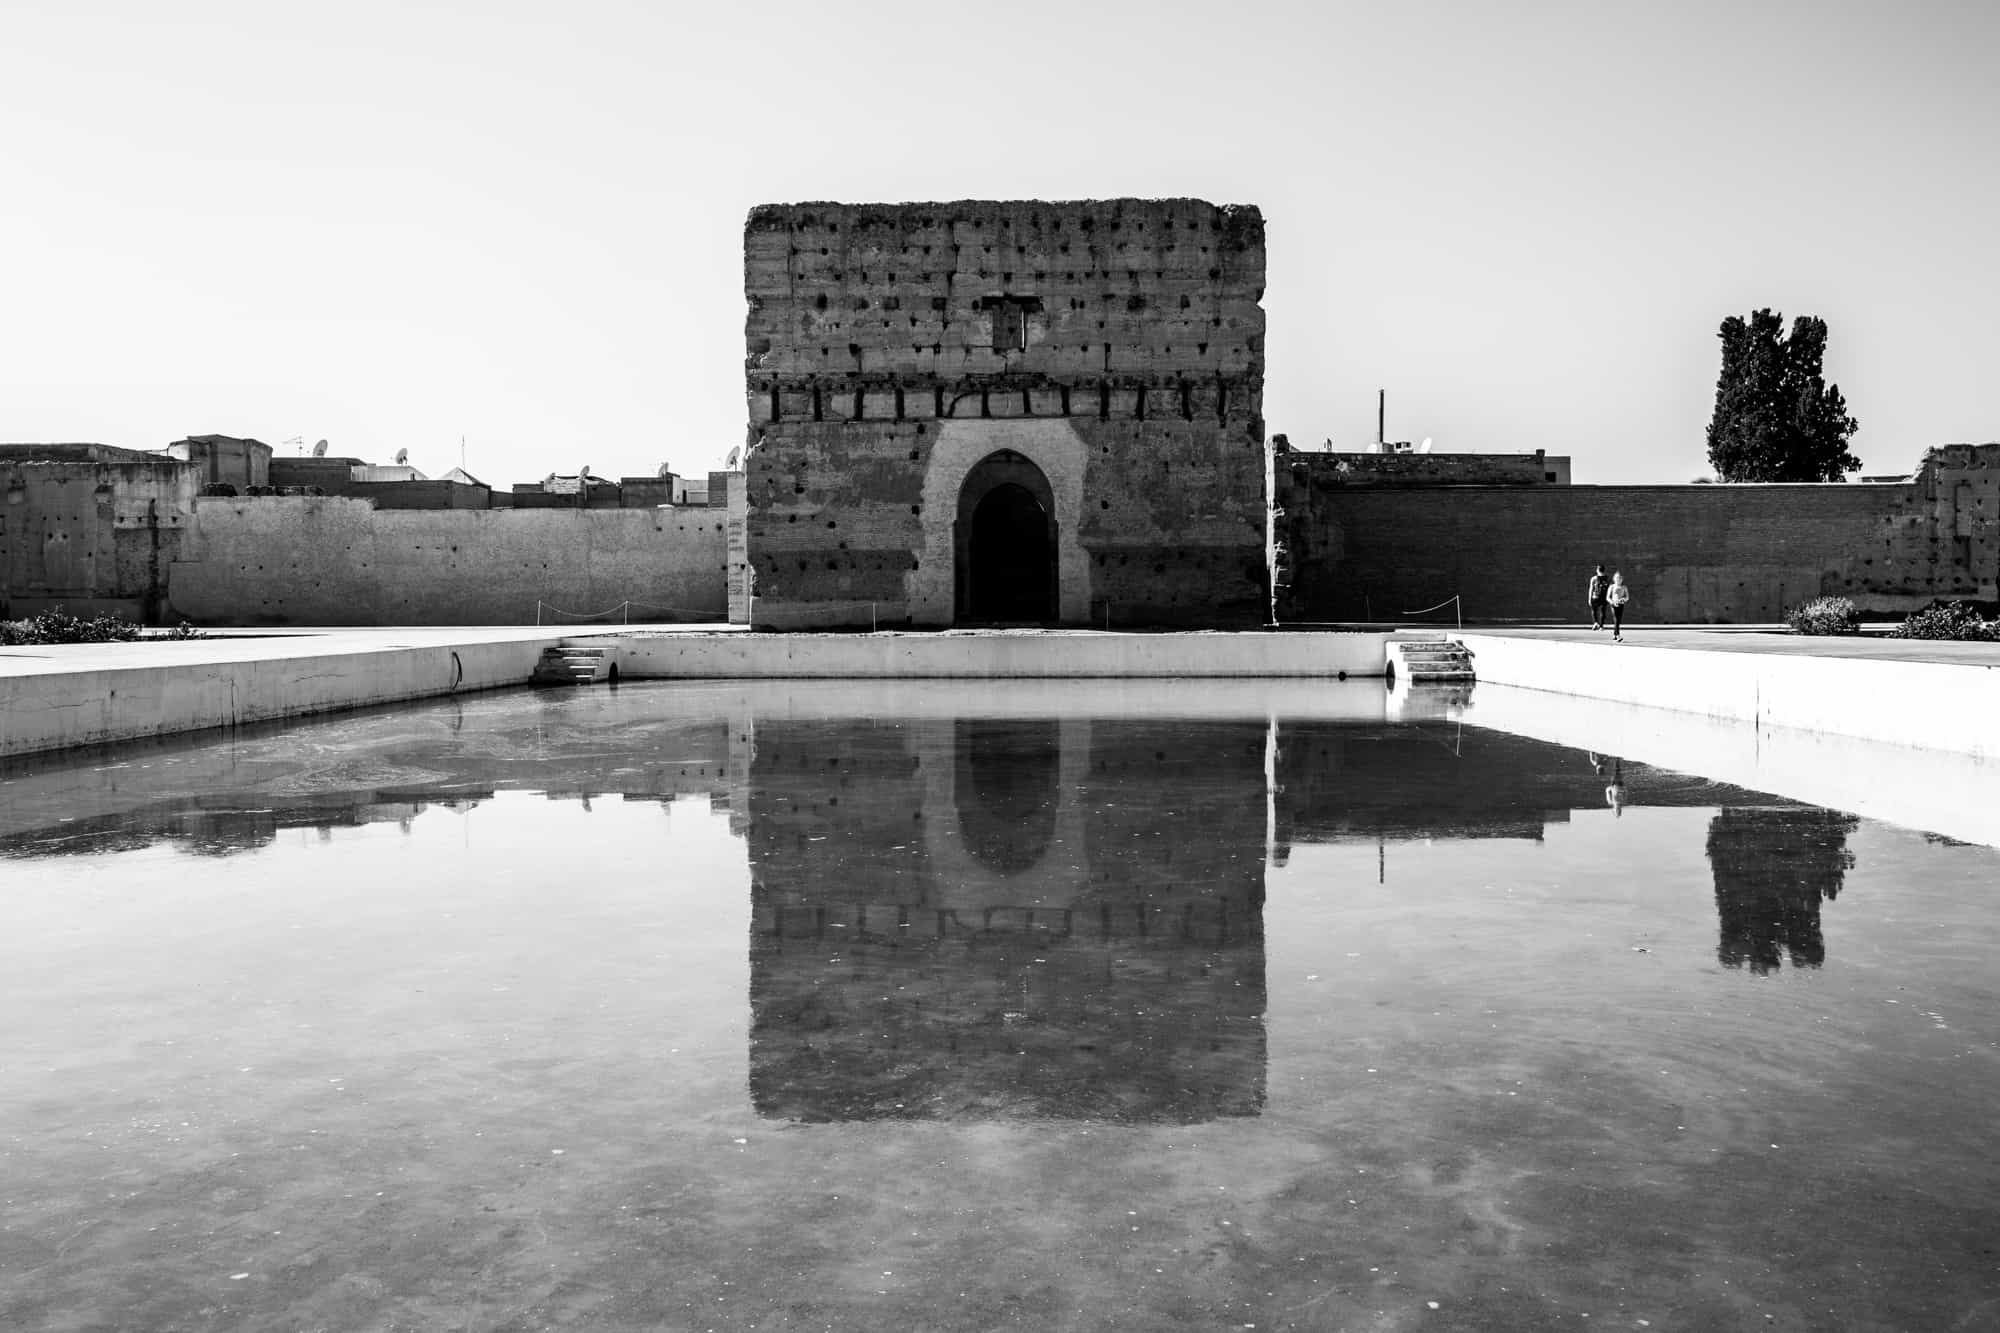 El Badii Palace, Marrakesh